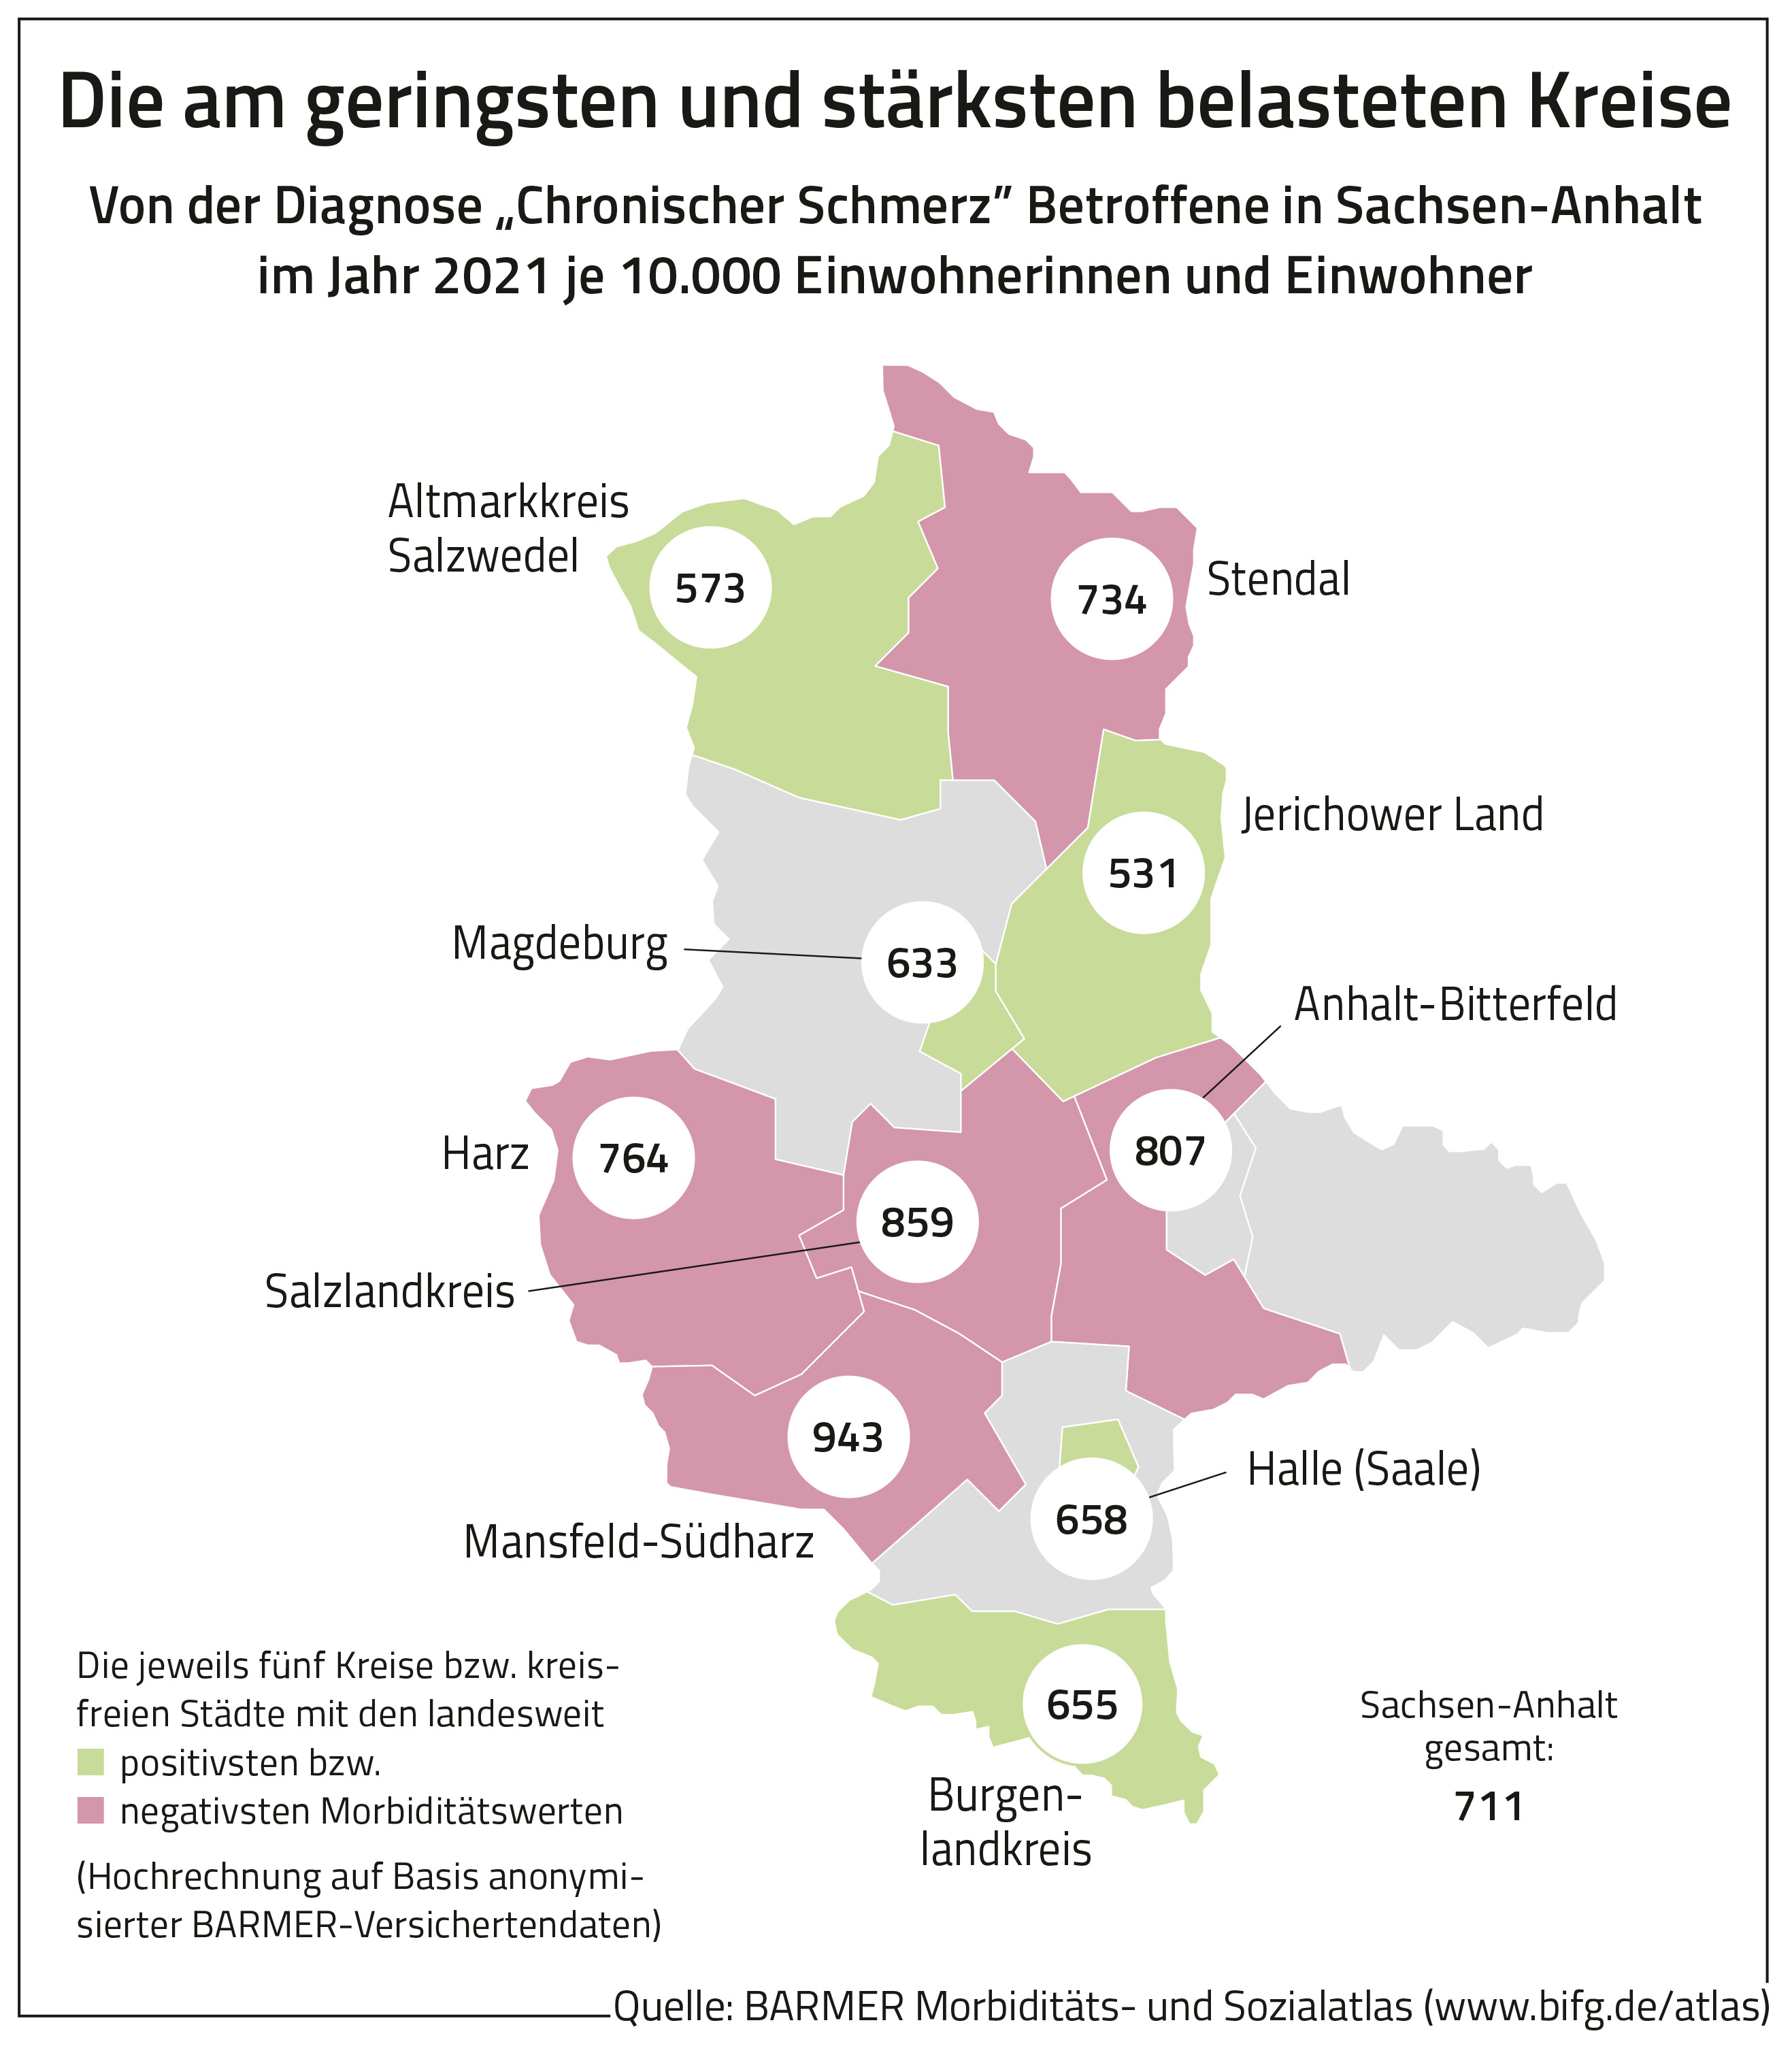 Chronischer Schmerz Landkreise Sachsen-Anhalt